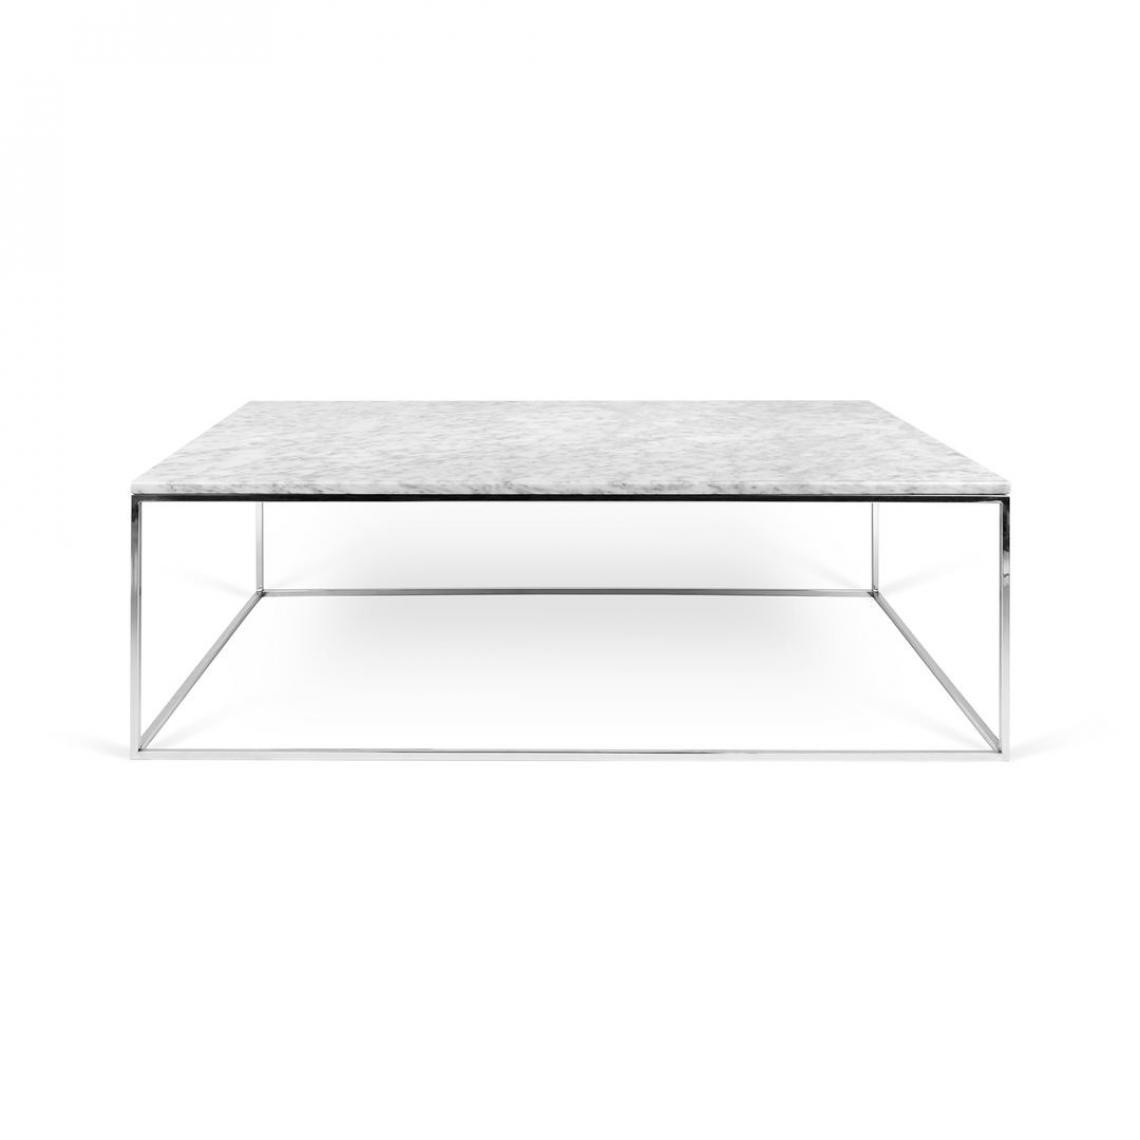 Temahome - Table basse marbre GLEAM 120 - blanc et chromé - Tables à manger